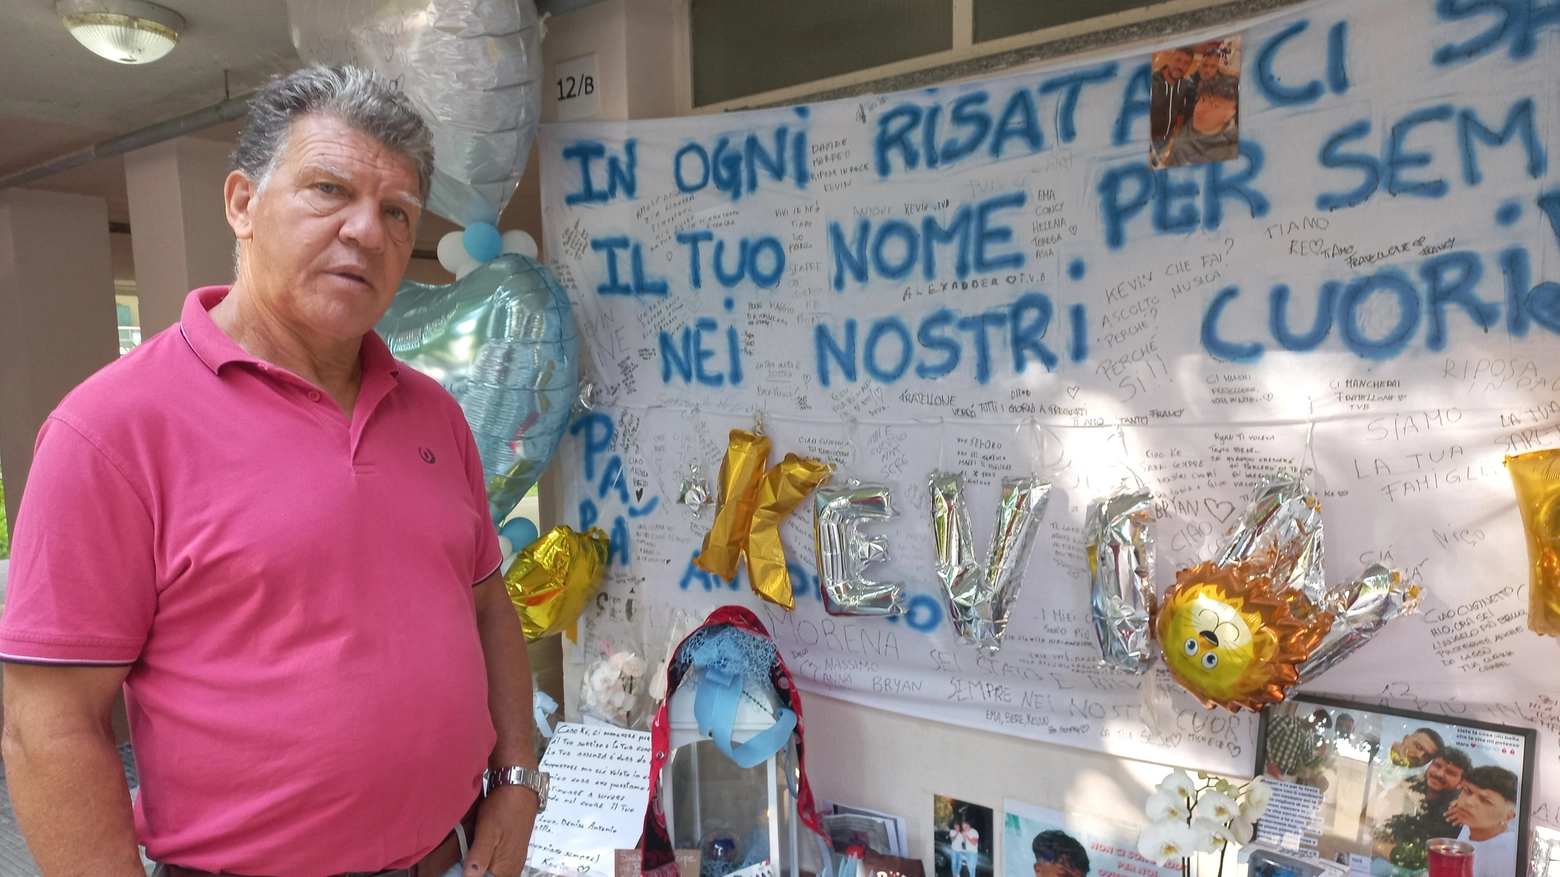 Giovanni Caporalello, zio di Kevin Laganà, nel porticato di casa affollato di fiori e ricordi per il nipote morto nella strage di Brandizzo (Torino)